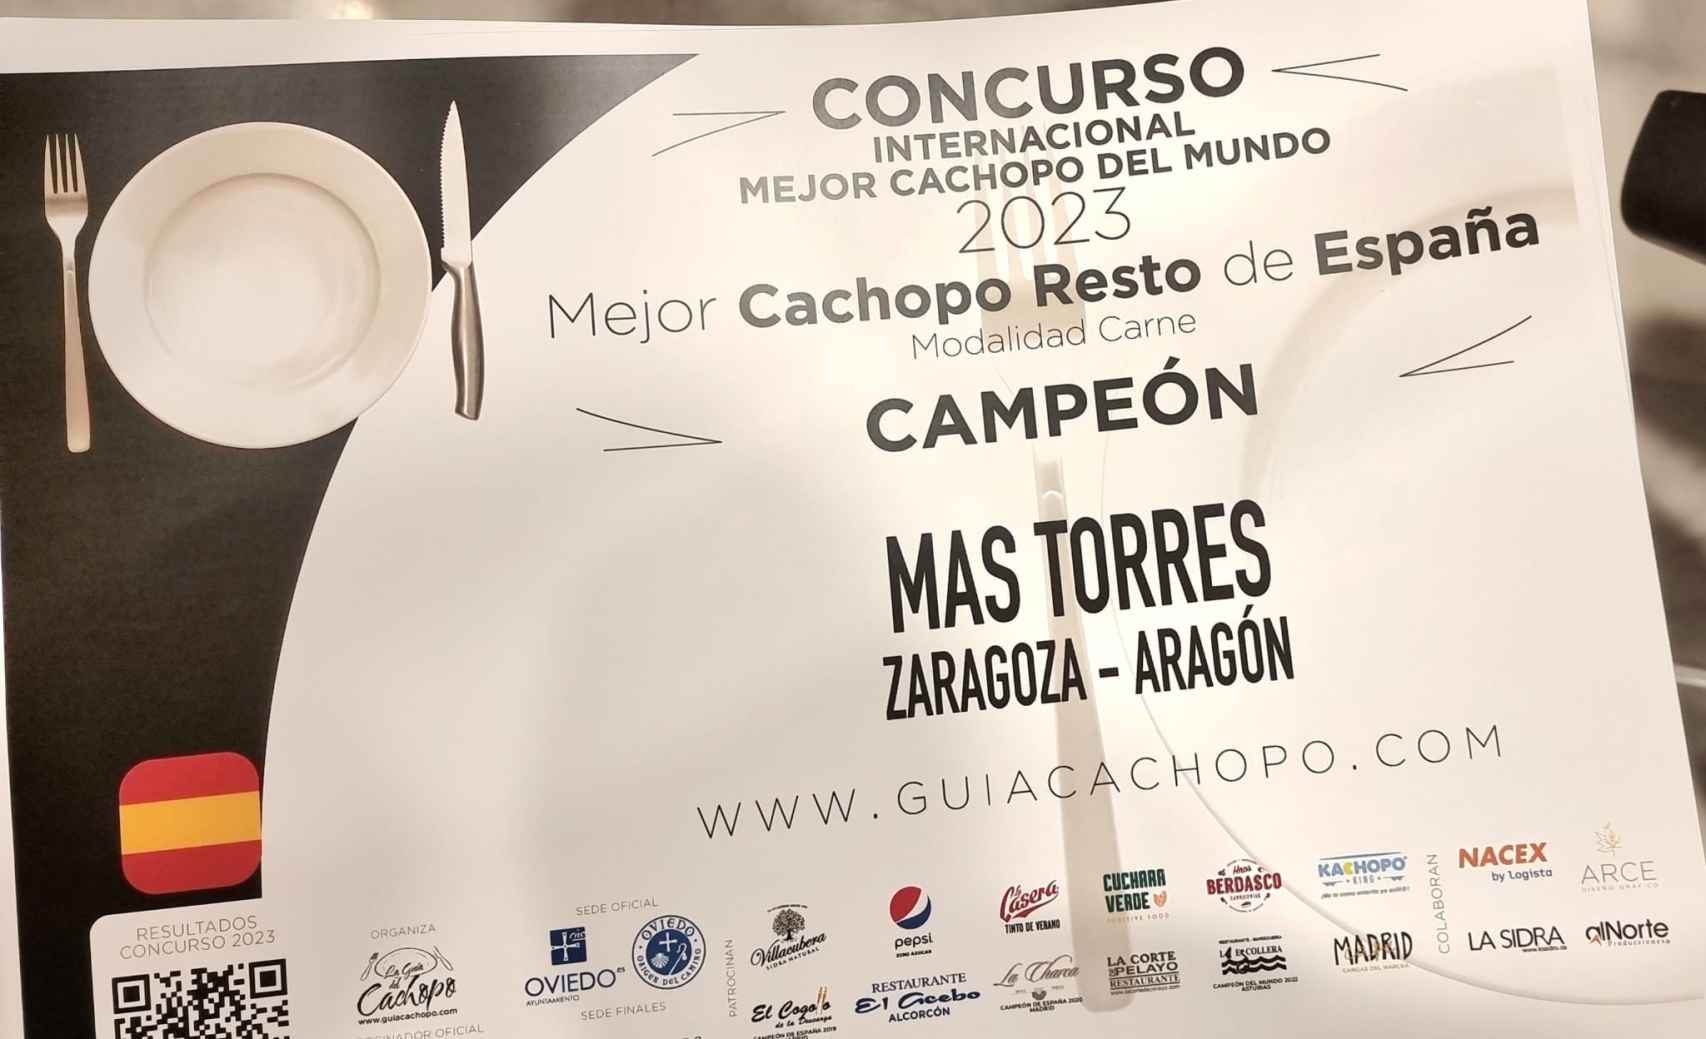 El diploma que acredita al cachopo de Mas Torres como el mejor de el resto de España.